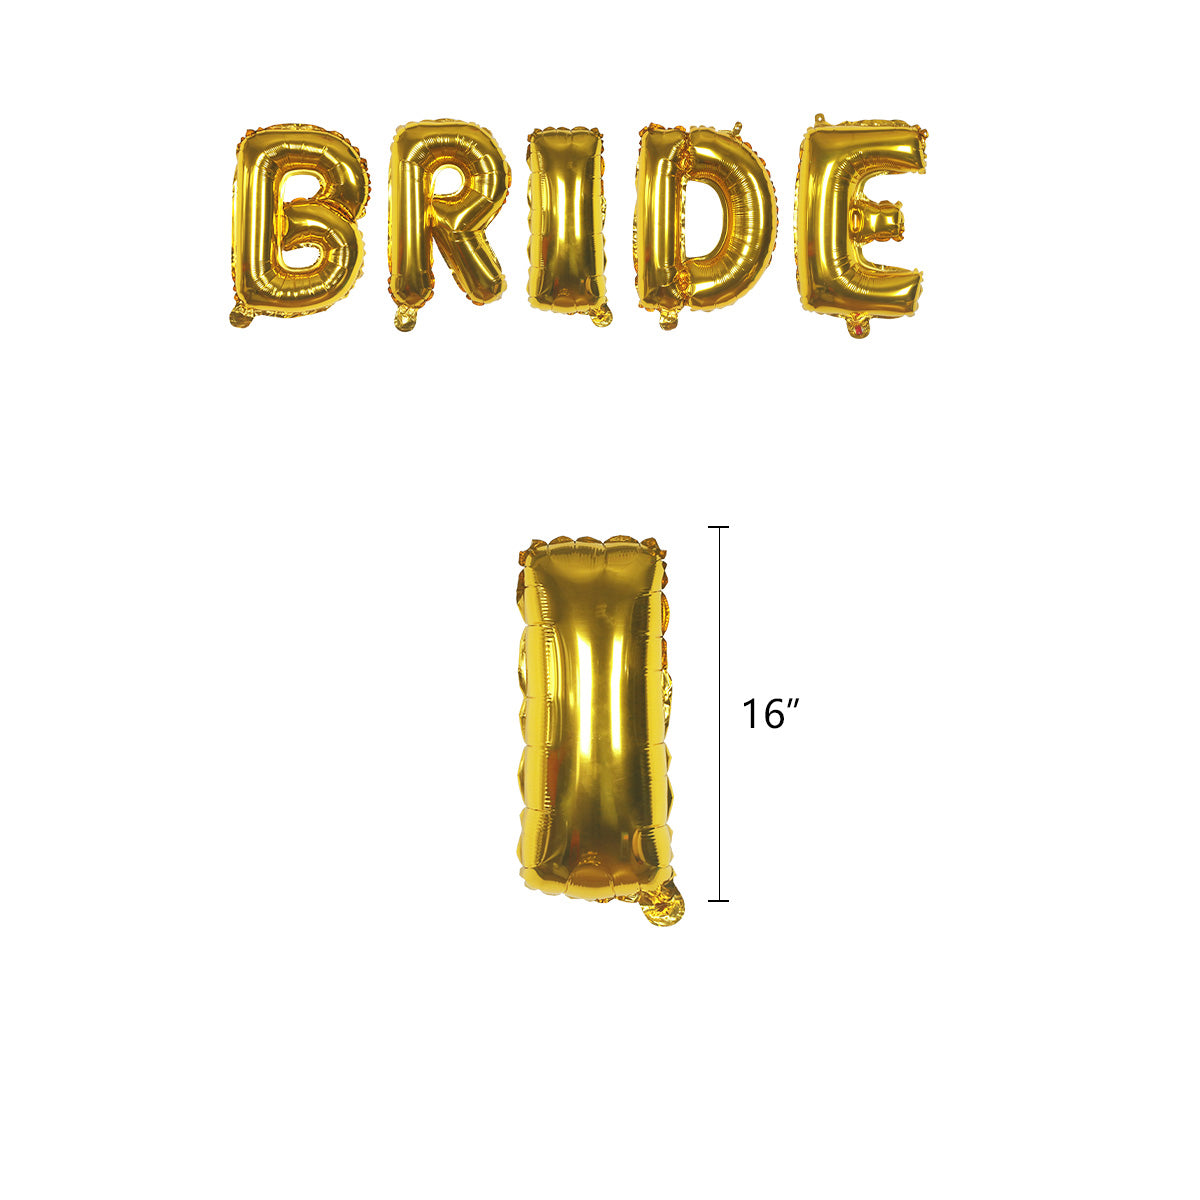 Gold Bridal Shower Decoration Kit - 21 Pieces!